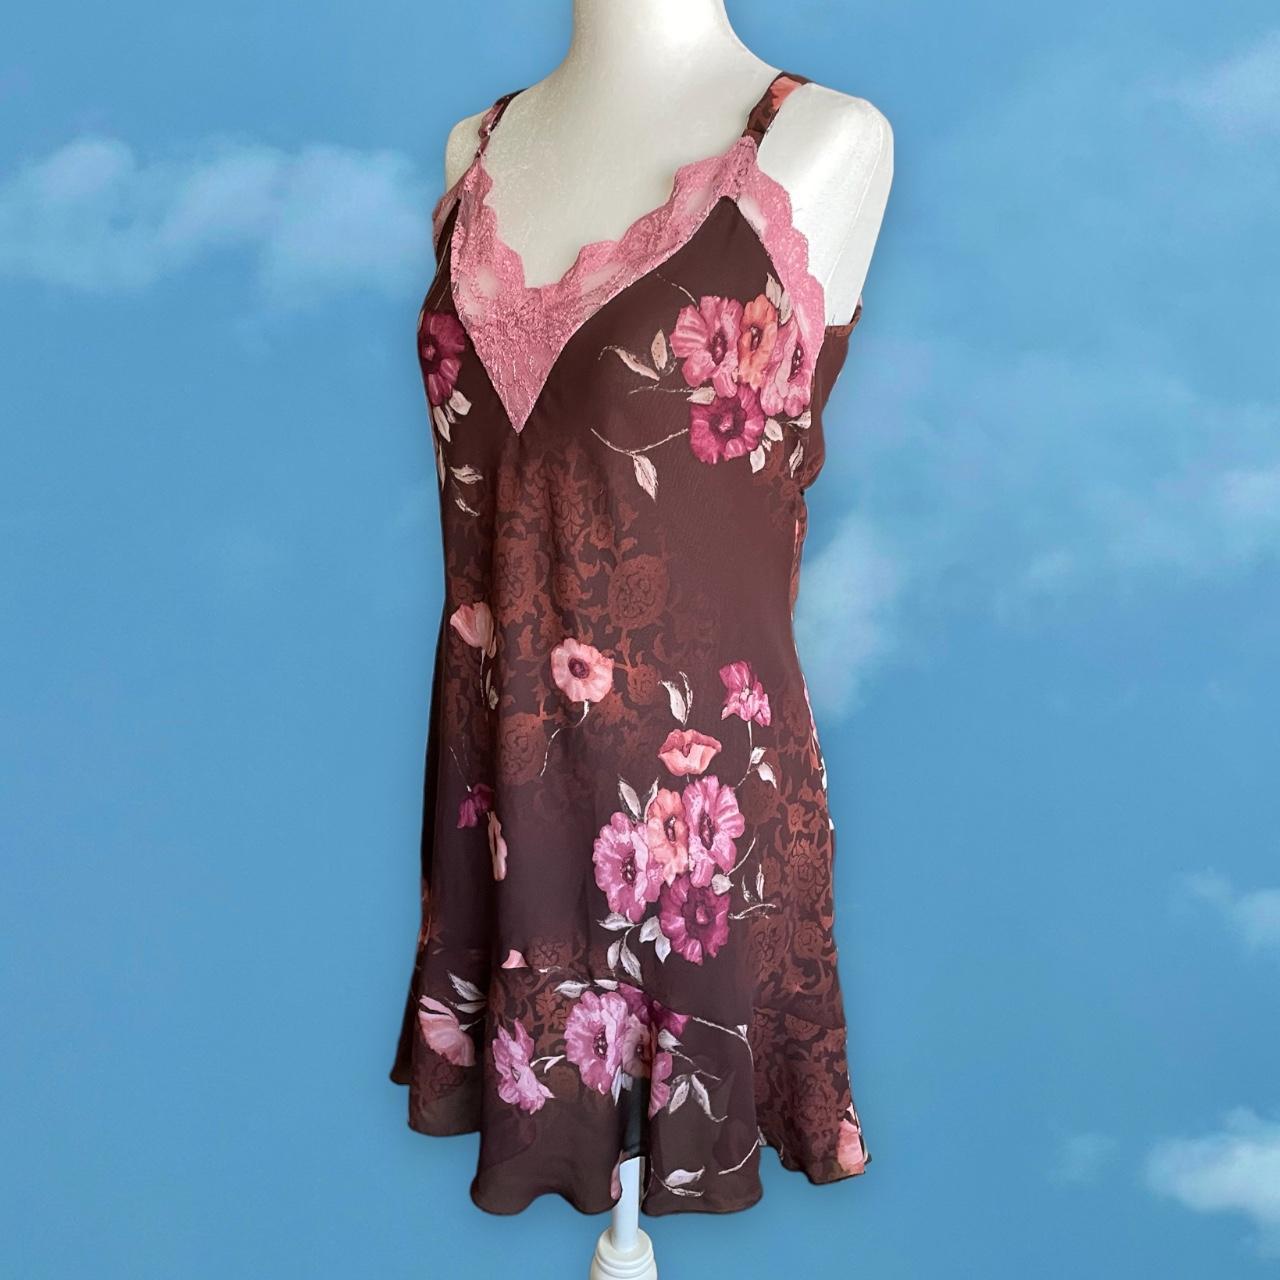 Product Image 2 - Vintage Floral Slip Dress 
brand: